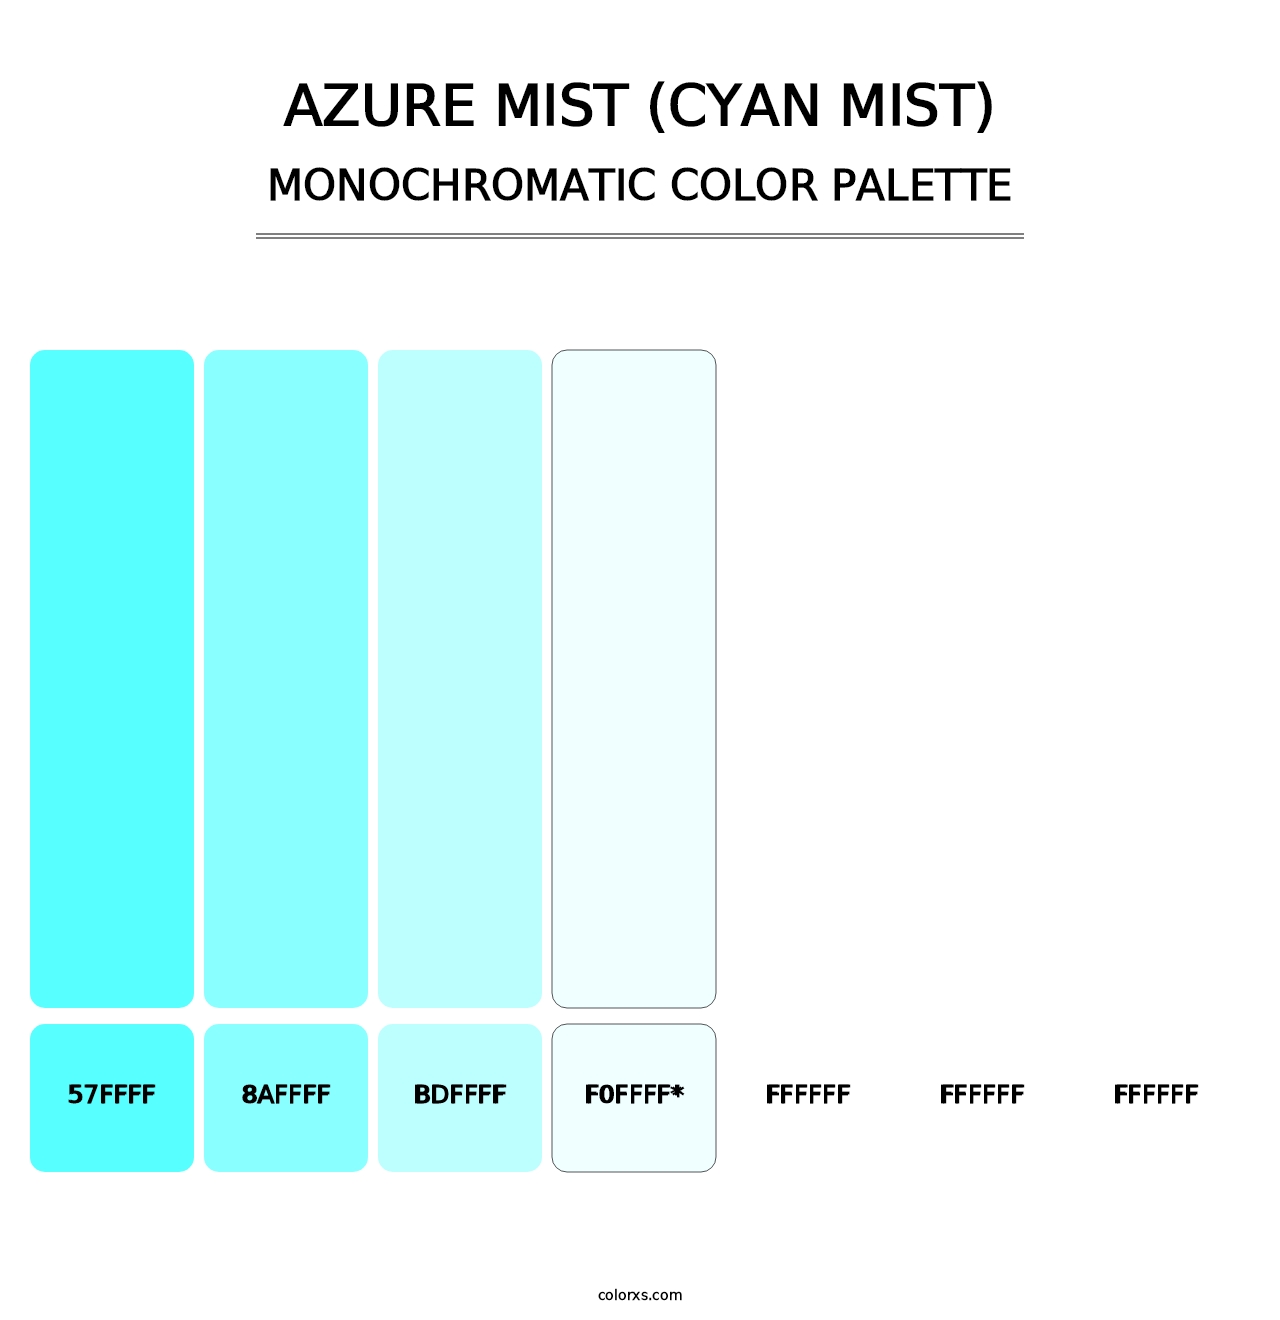 Azure Mist (Cyan Mist) - Monochromatic Color Palette